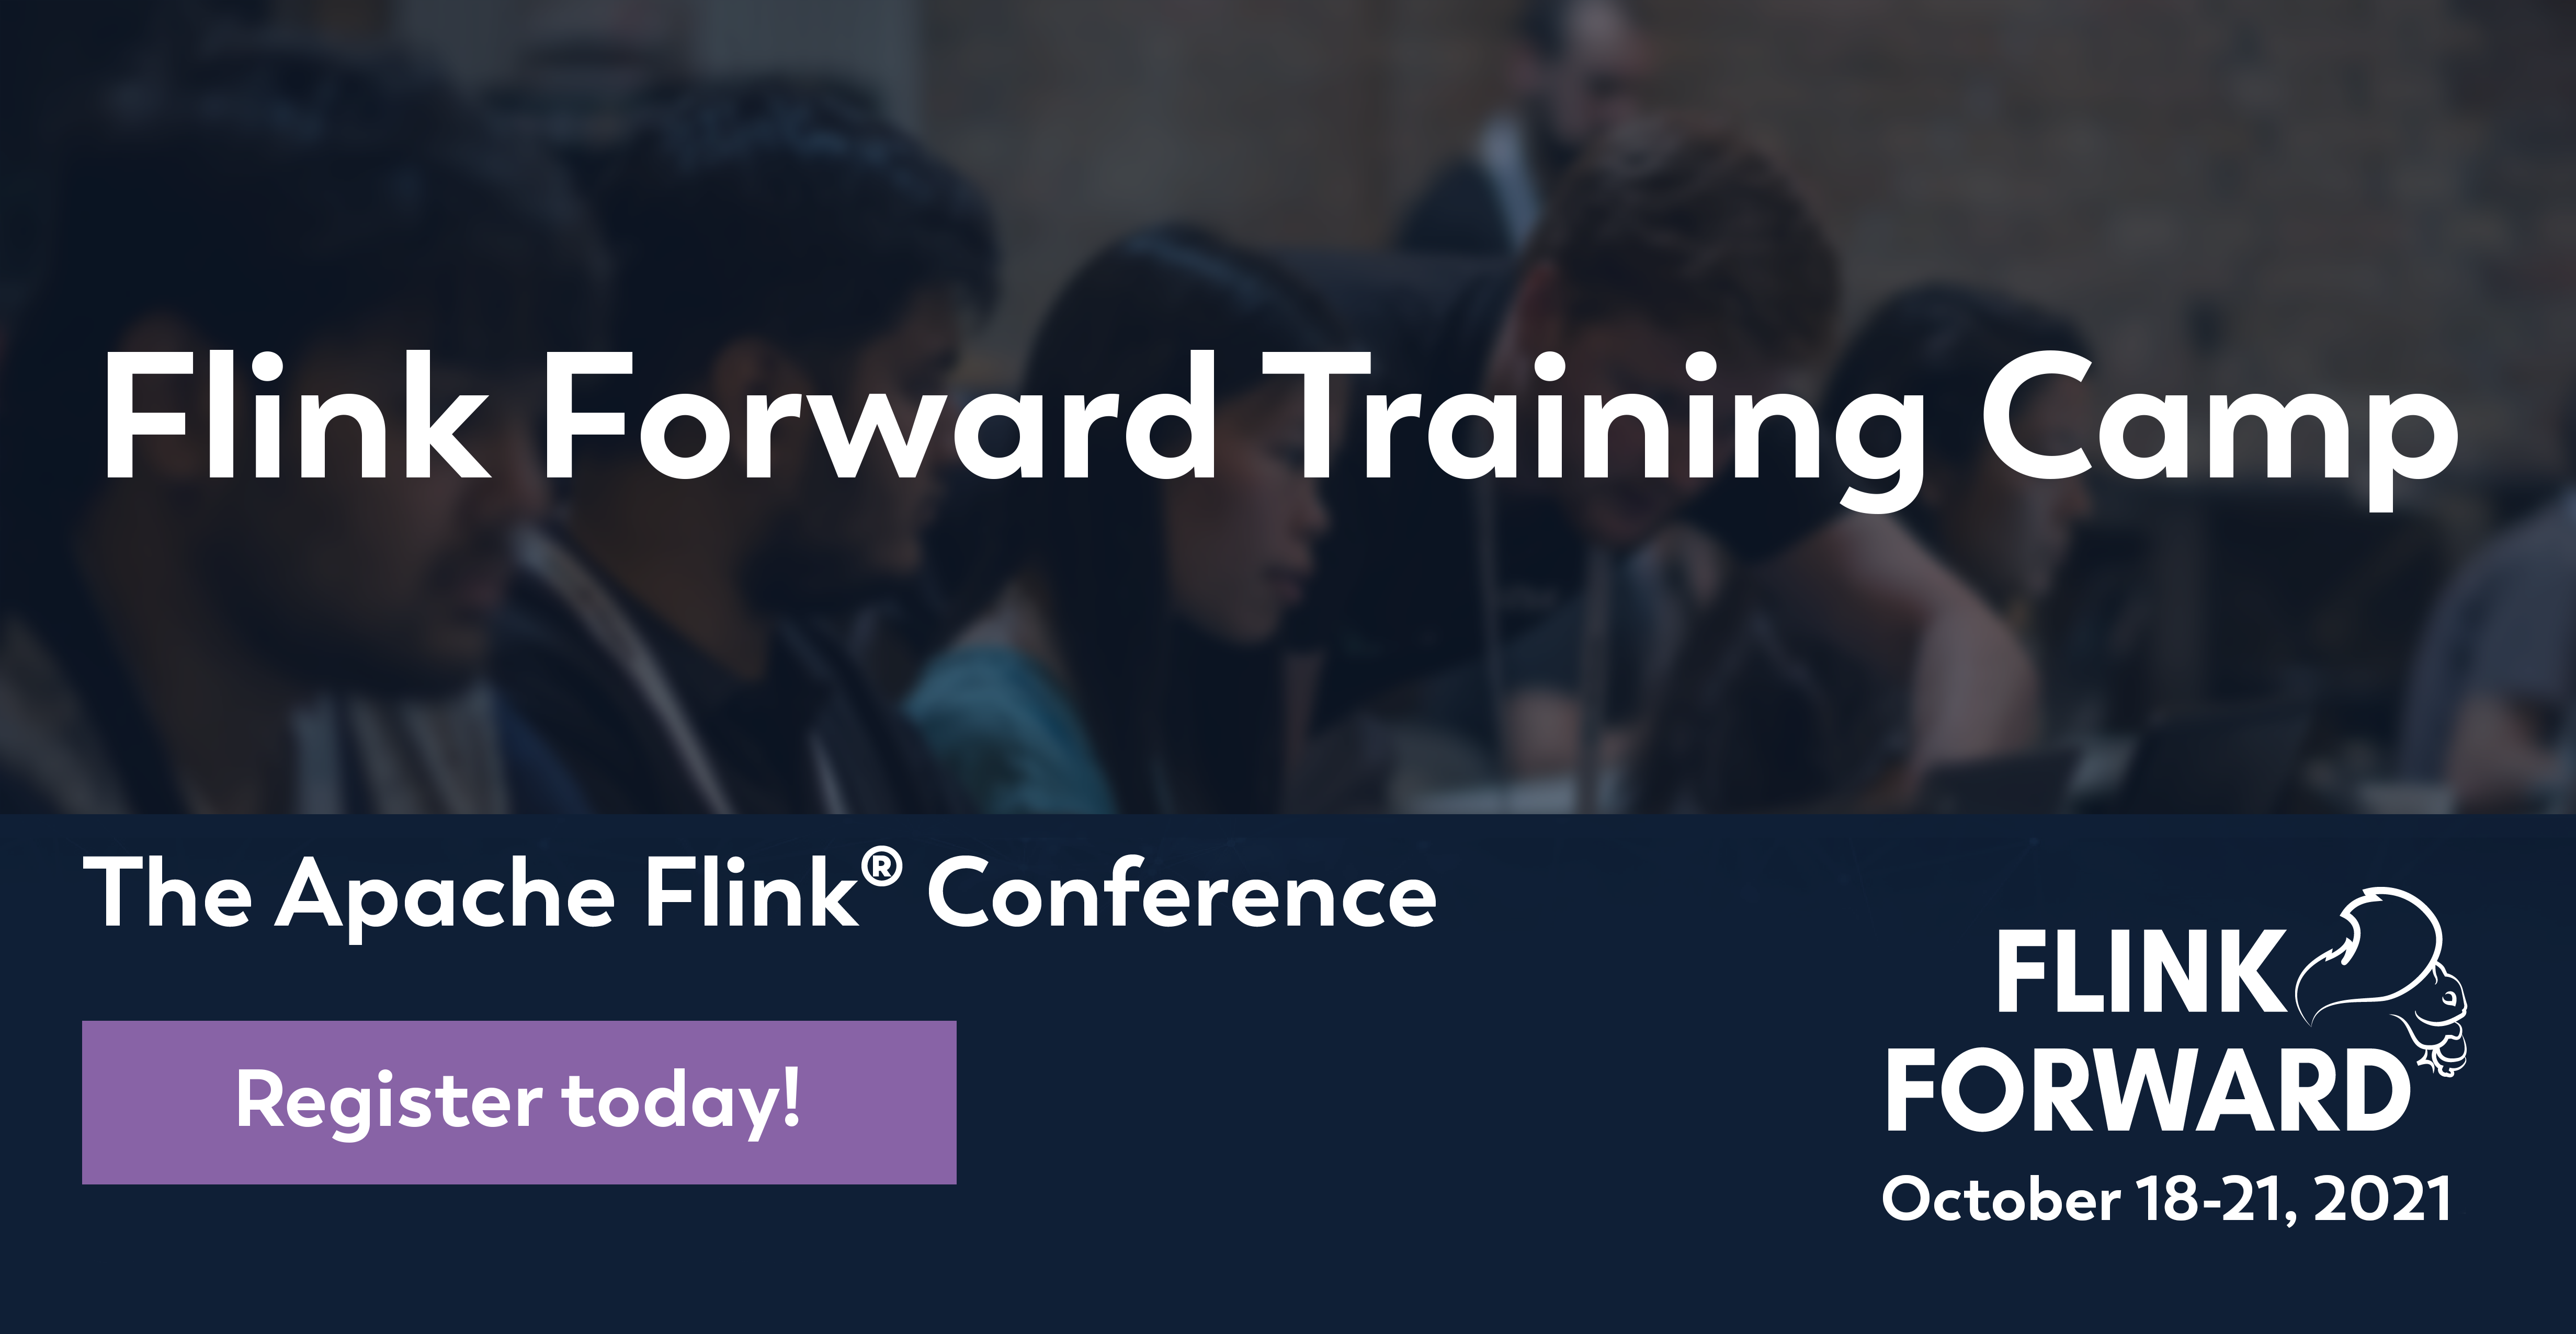 FFTC, Flink Forward Training Camp 2021